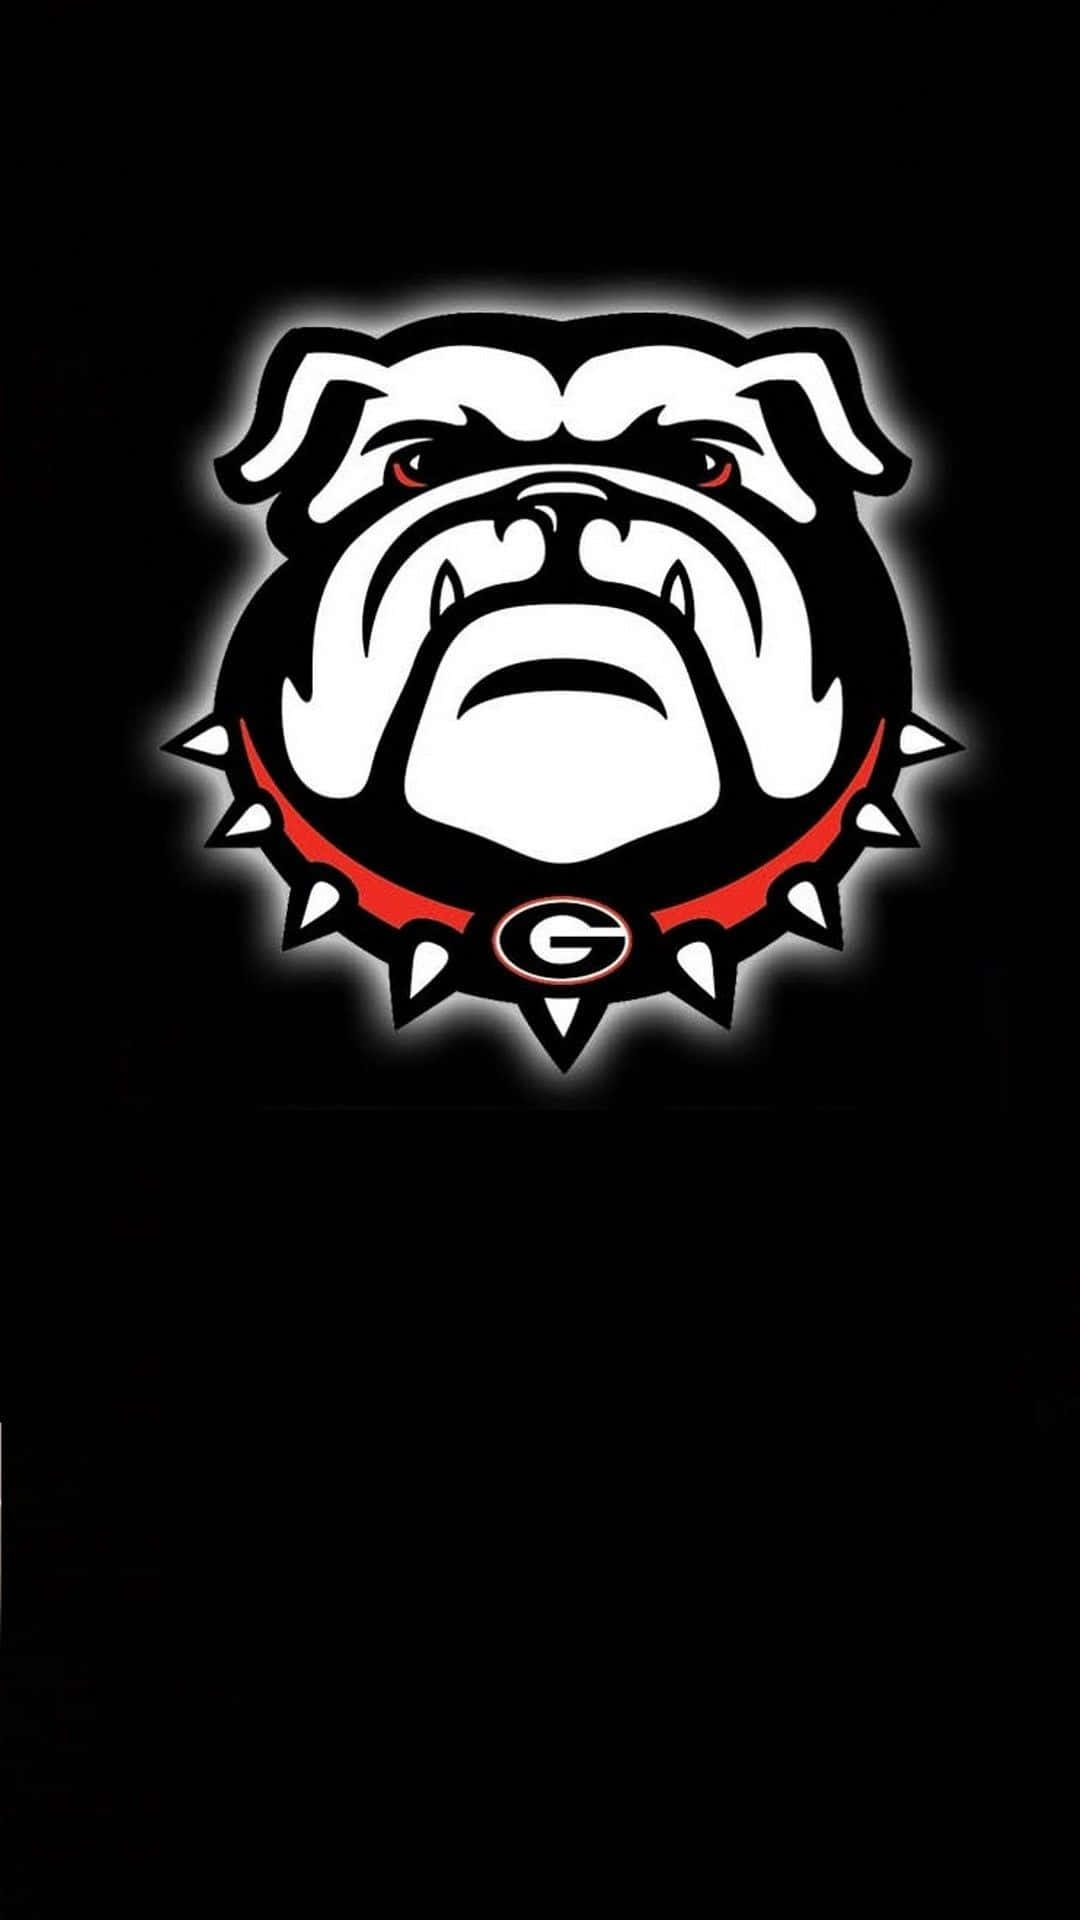 Georgiabulldogs Handy-logo Wallpaper